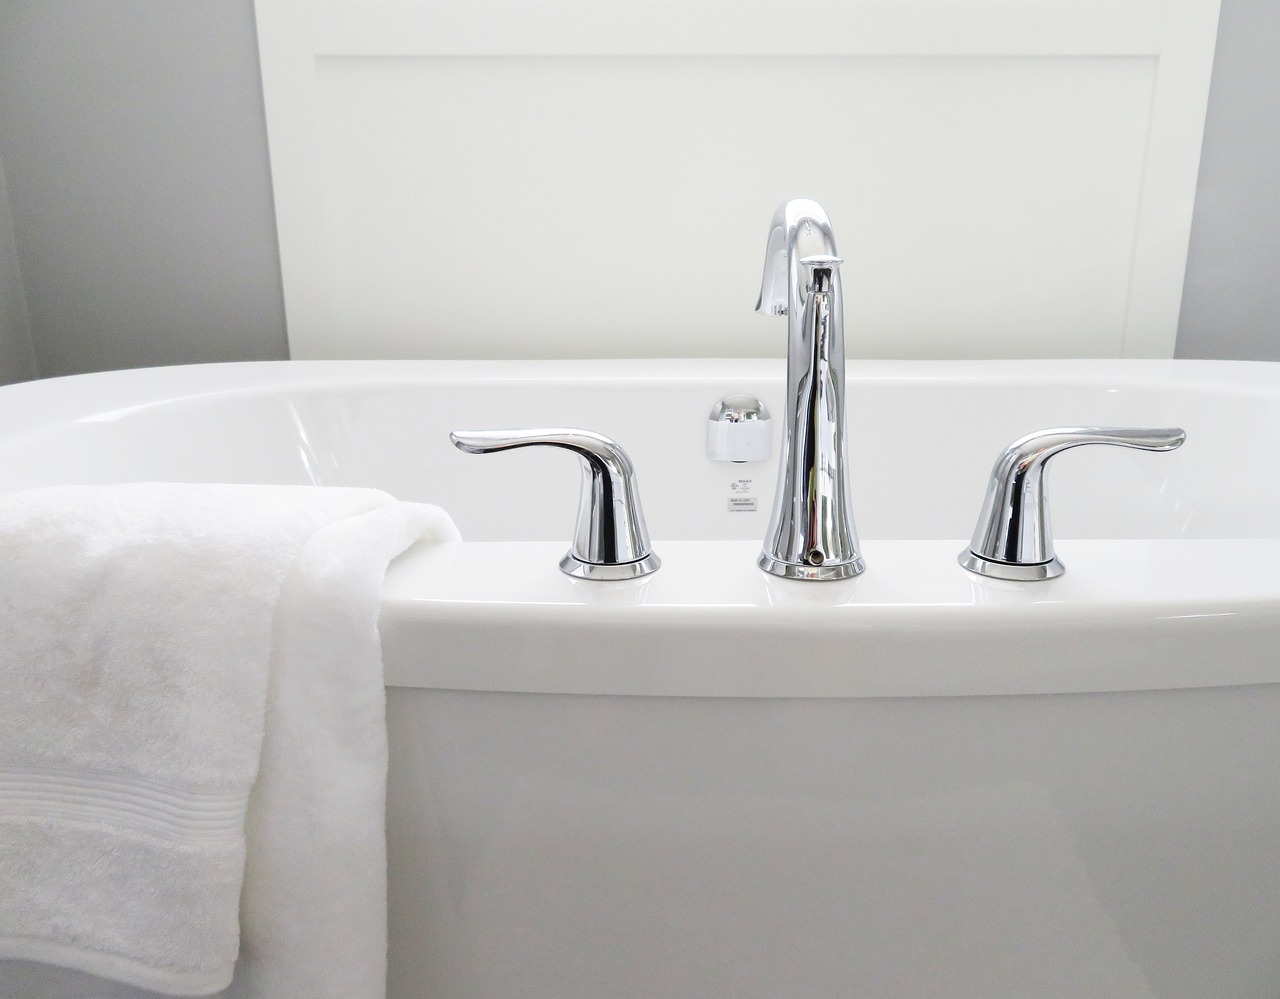 תיקון אמבטיה – האם זה באמת שווה?